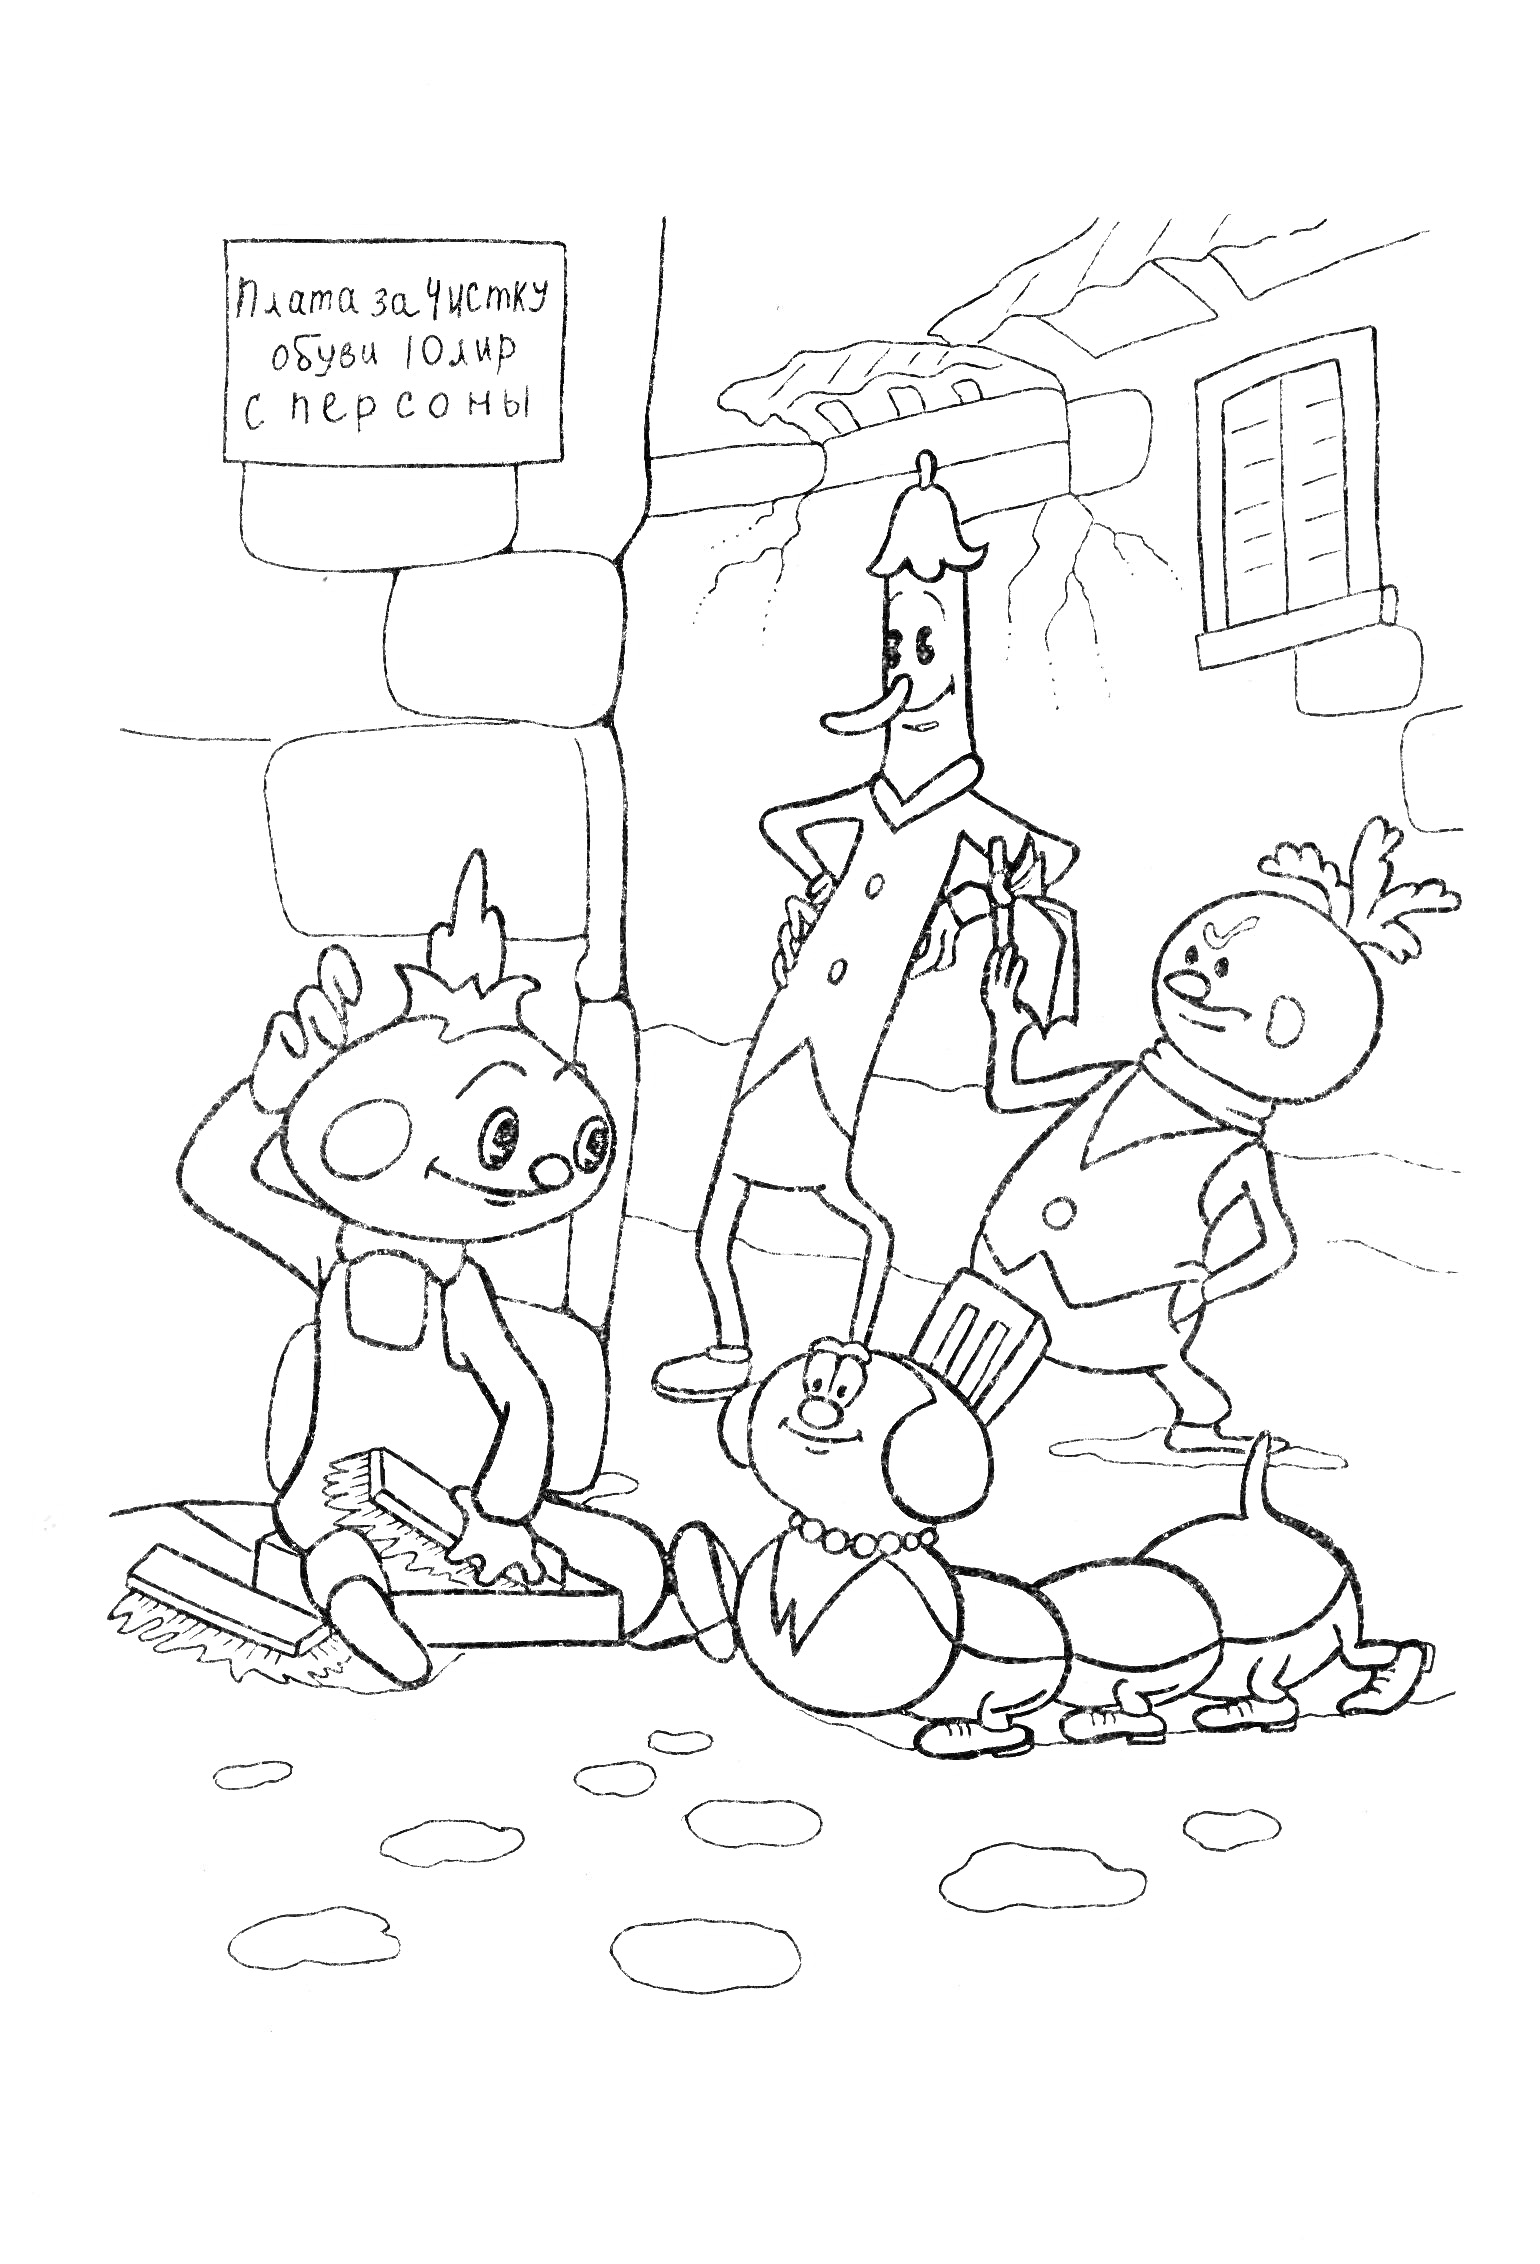 Чиполлино и его друзья сидят и стоят на улице возле таблички 